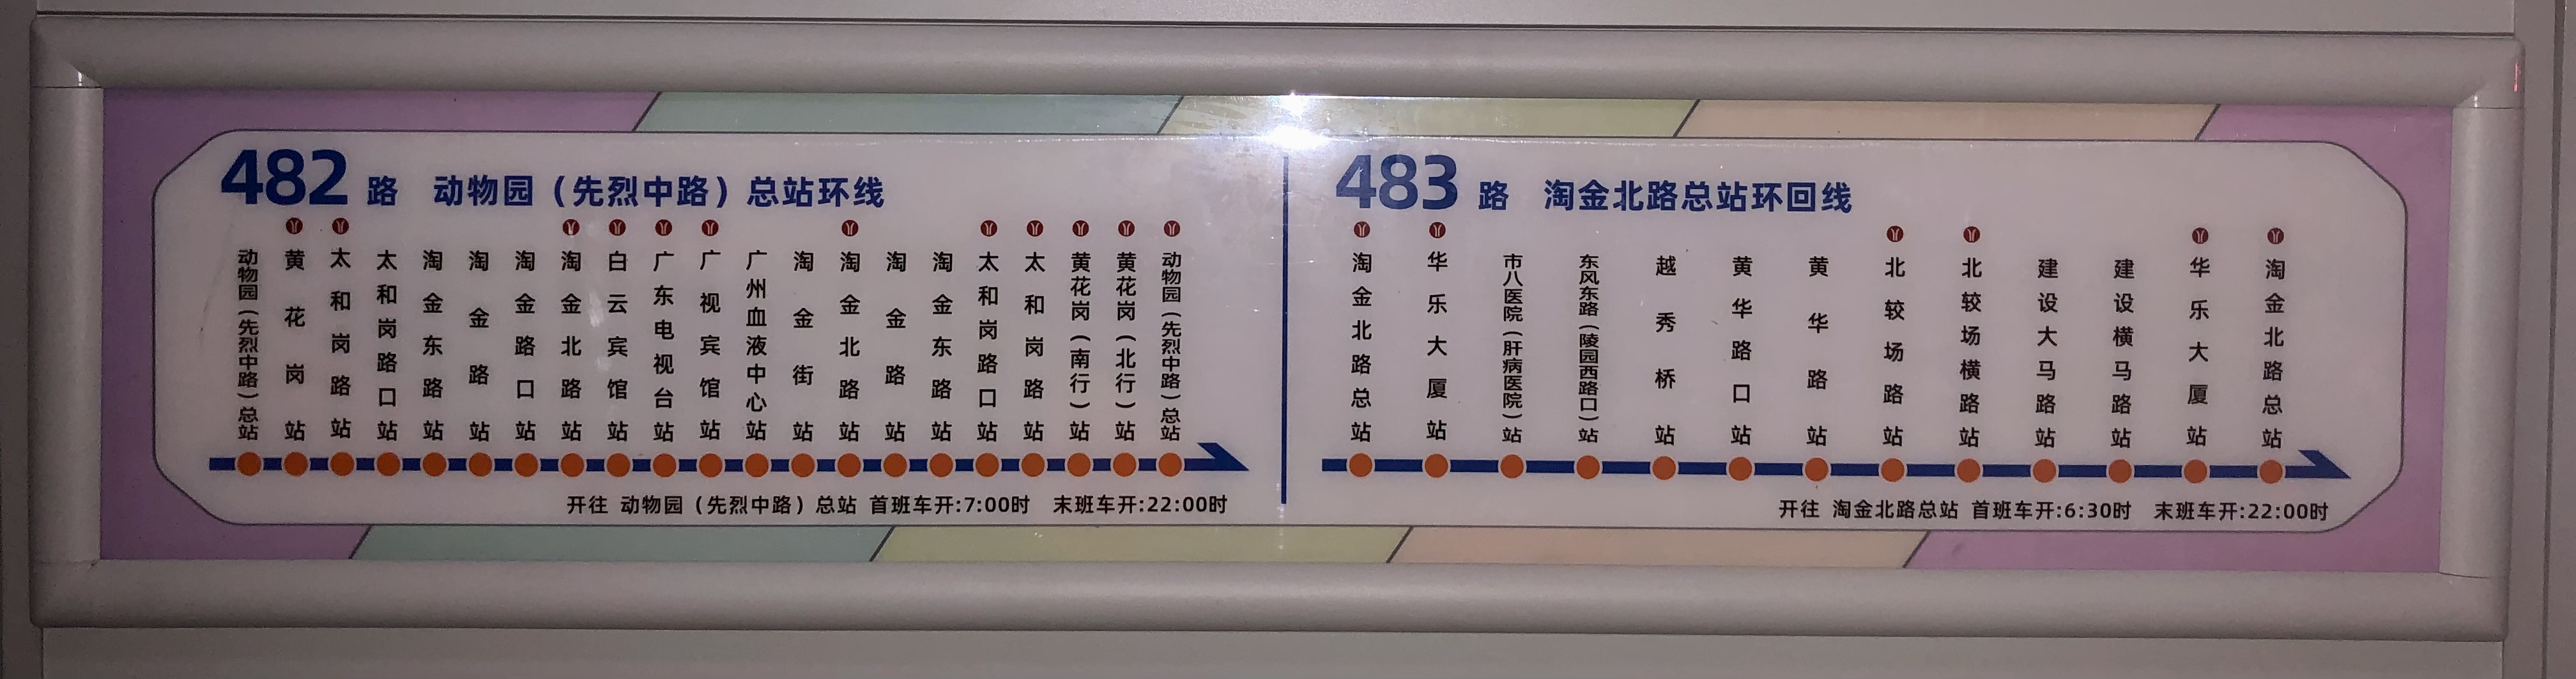 广州483路公交车路线